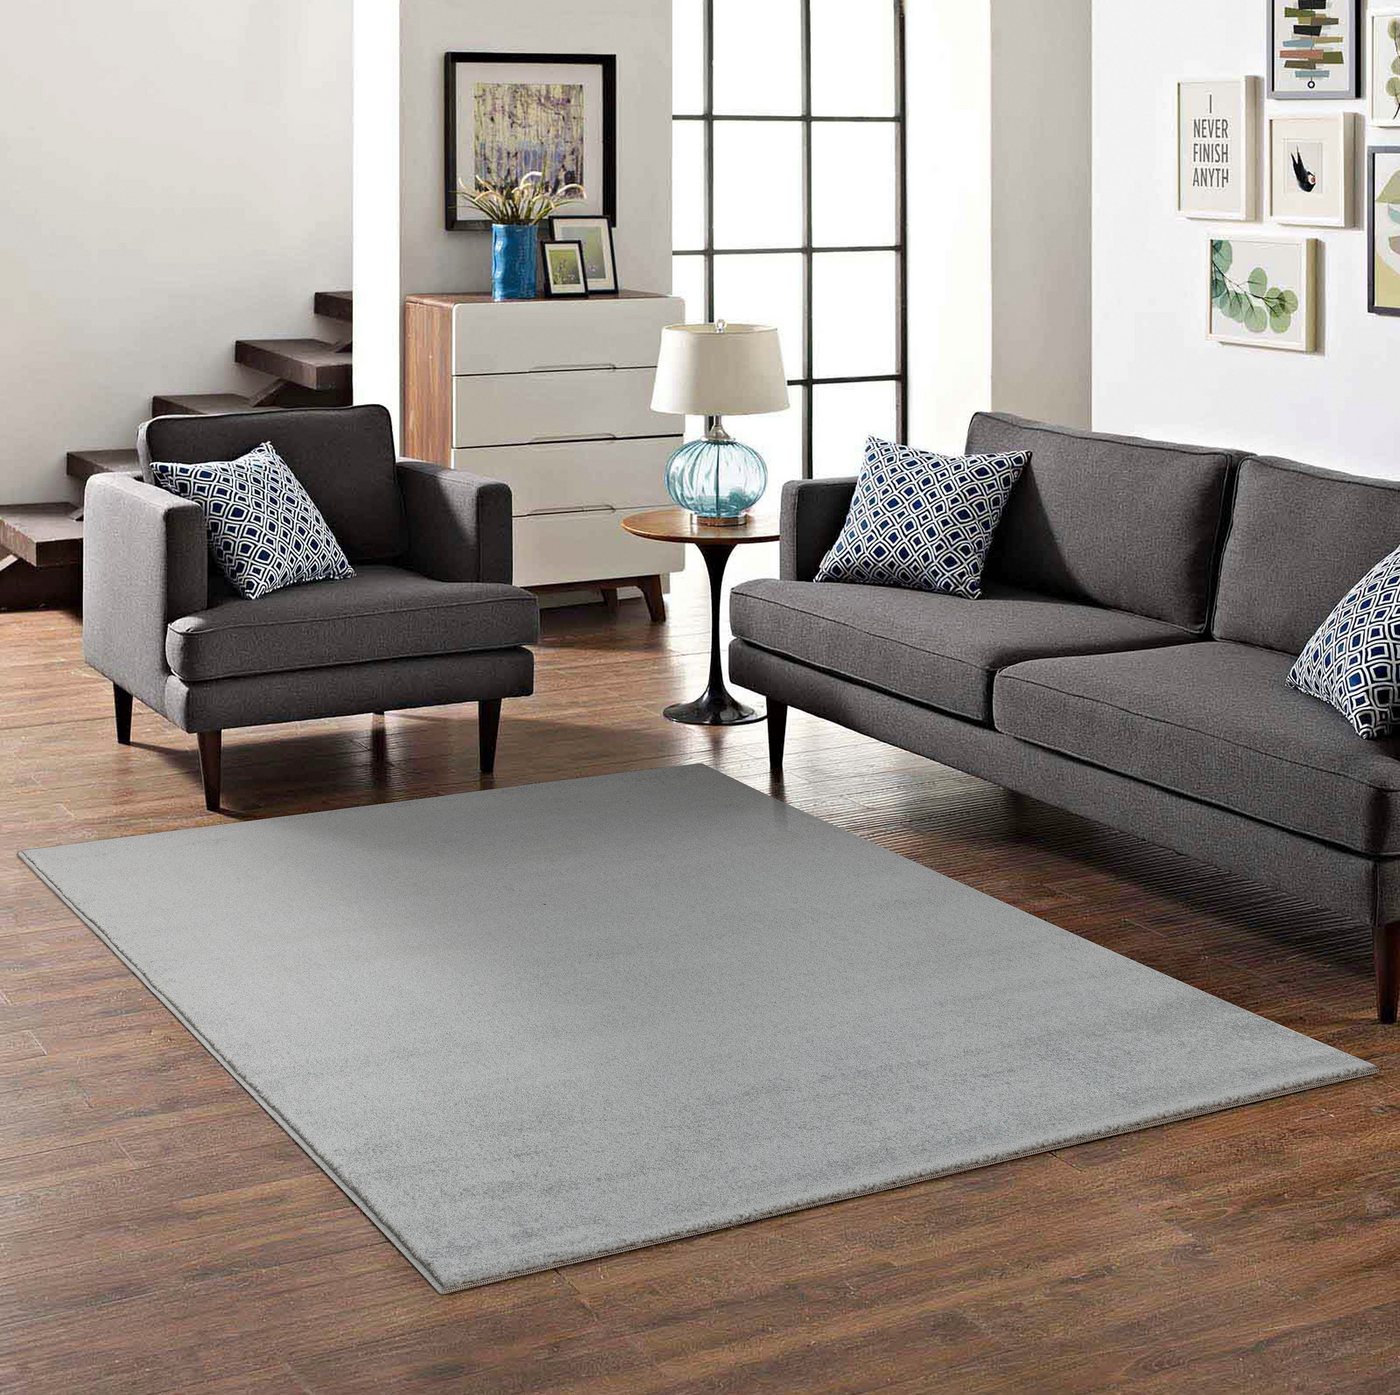 Teppiche & Teppichboden und andere Wohntextilien von MY HOME. Online kaufen  bei Möbel &